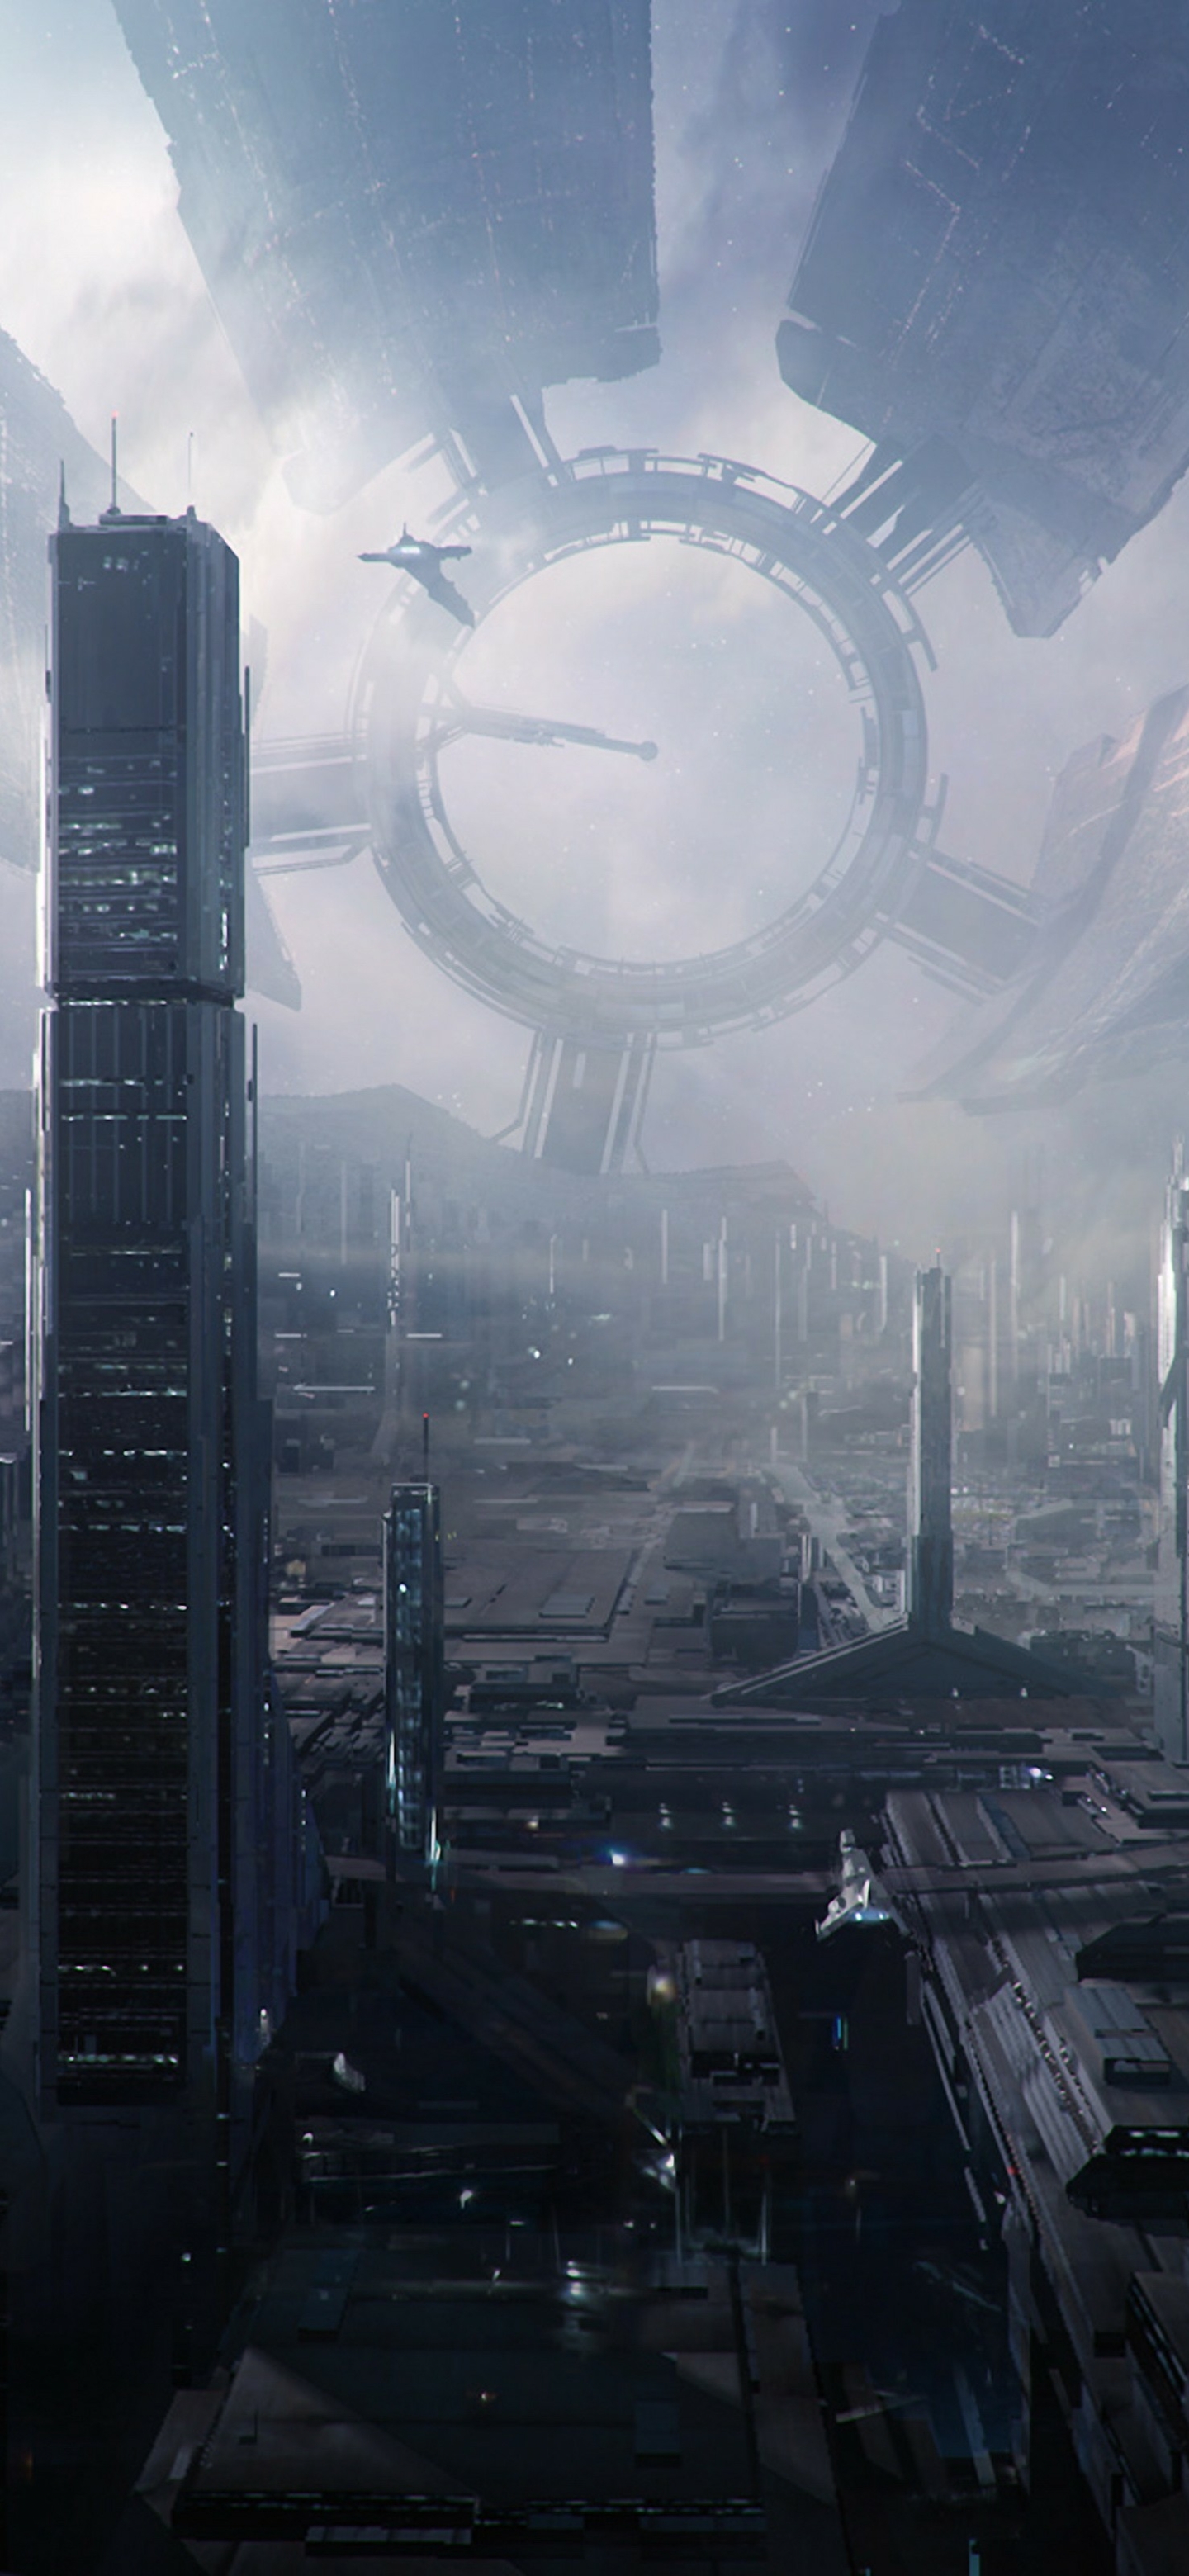 video game, mass effect 2, mass effect, city, spaceship, citadel (mass effect), building